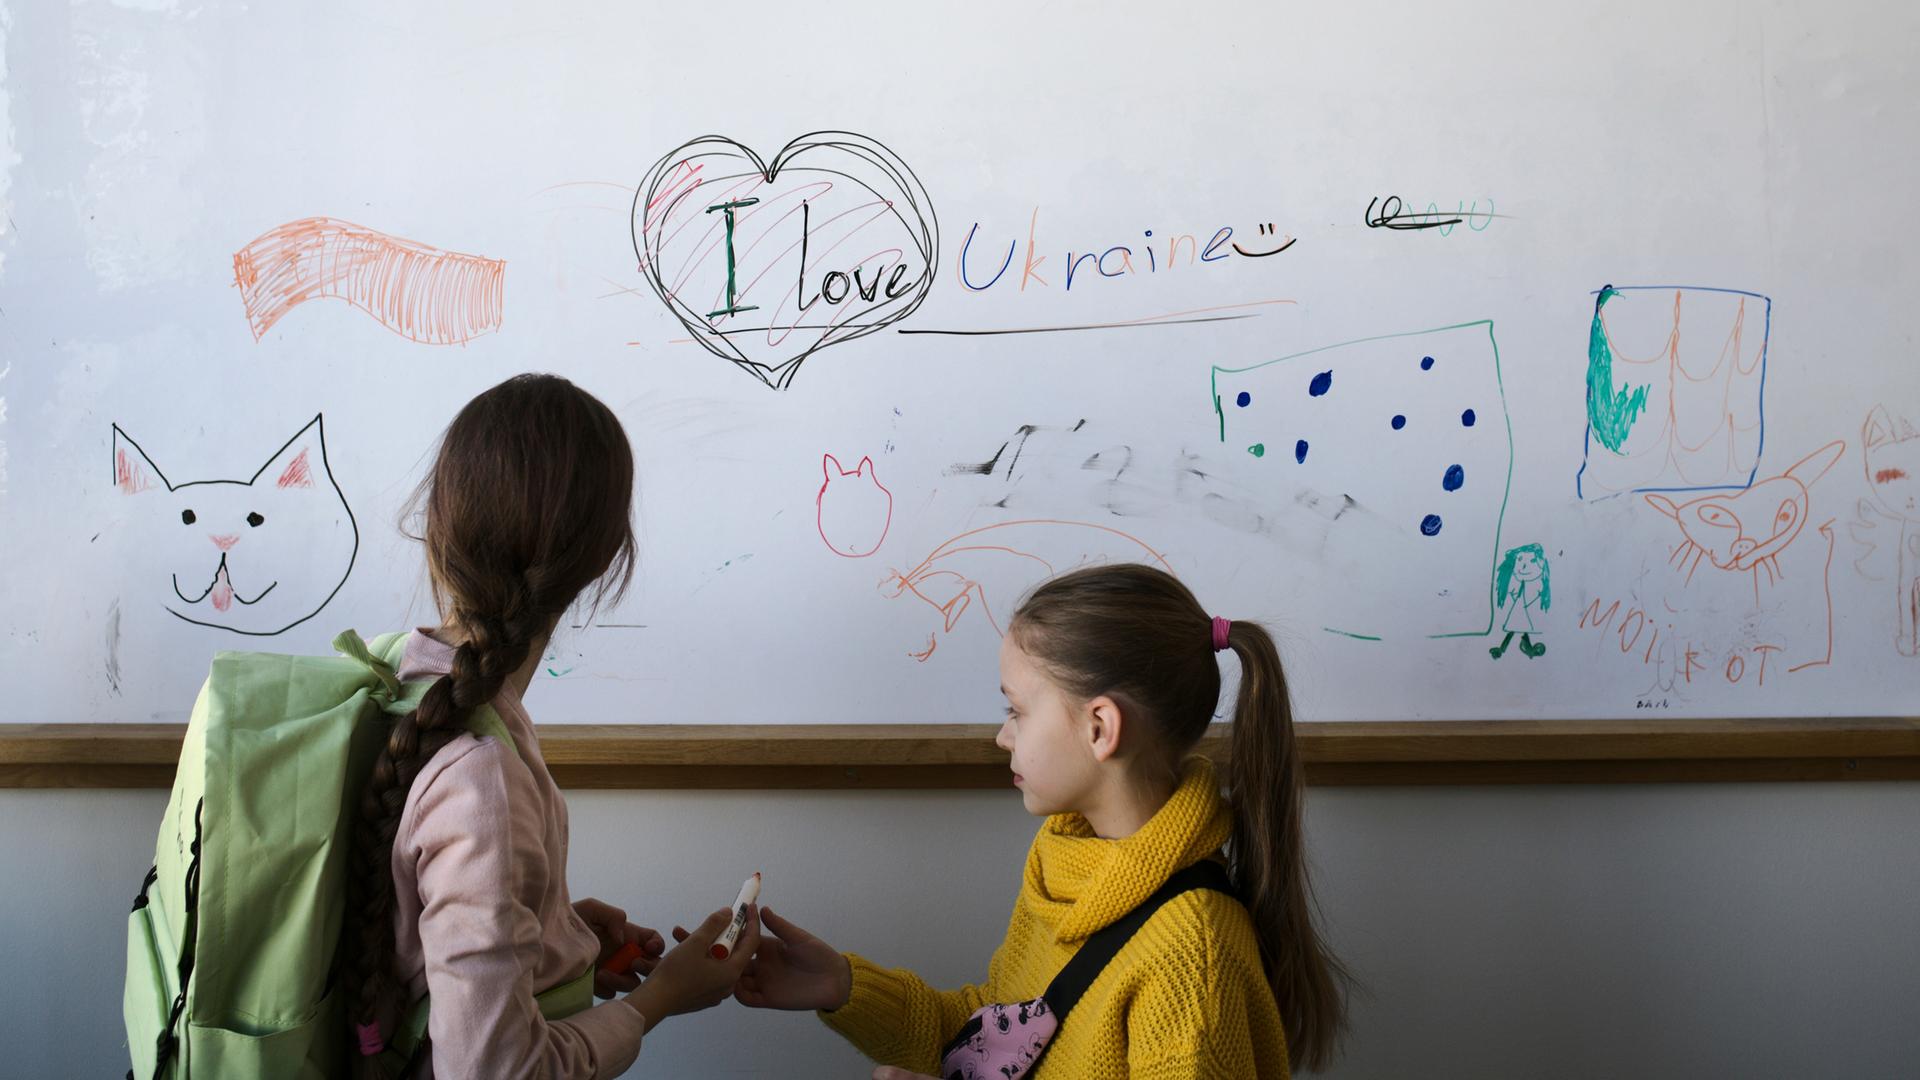 Zwei Mädchen stehen in einem Klassenraum vor einer weißen Tafel, auf der Katzen und ein Herz aufgezeichnet sind, dazu der Satz: "I love Ukraine"